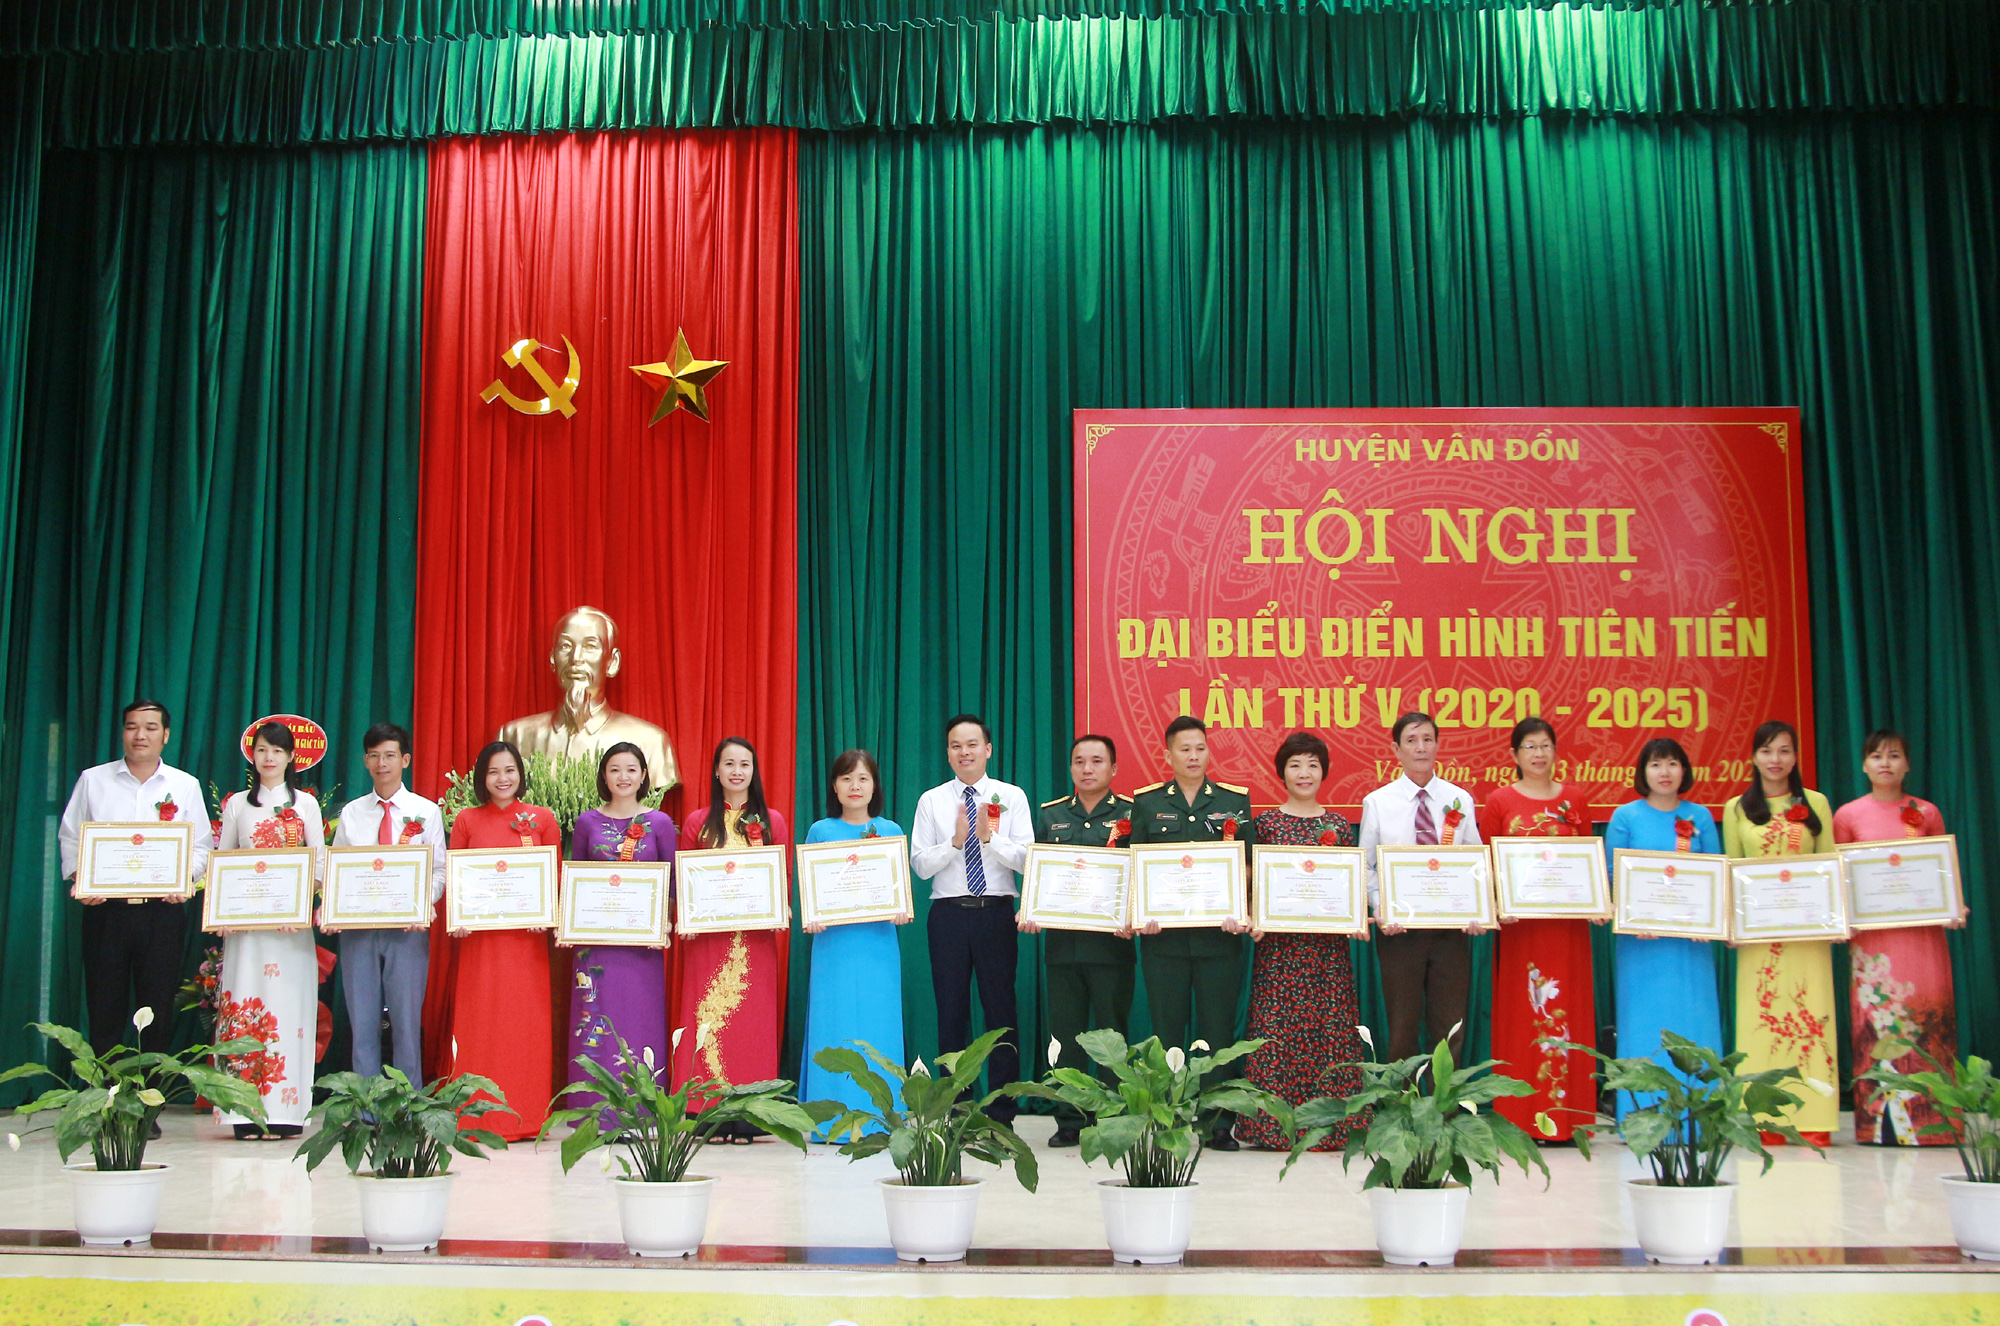 Đồng chí Trương Mạnh Hùng, Chủ tịch UBND huyện Vân Đồn trao tặng Giấy khen cho cá nhân có thành tích xuất sắc trong các phong trào thi đua, giai đoạn 2015-2020.